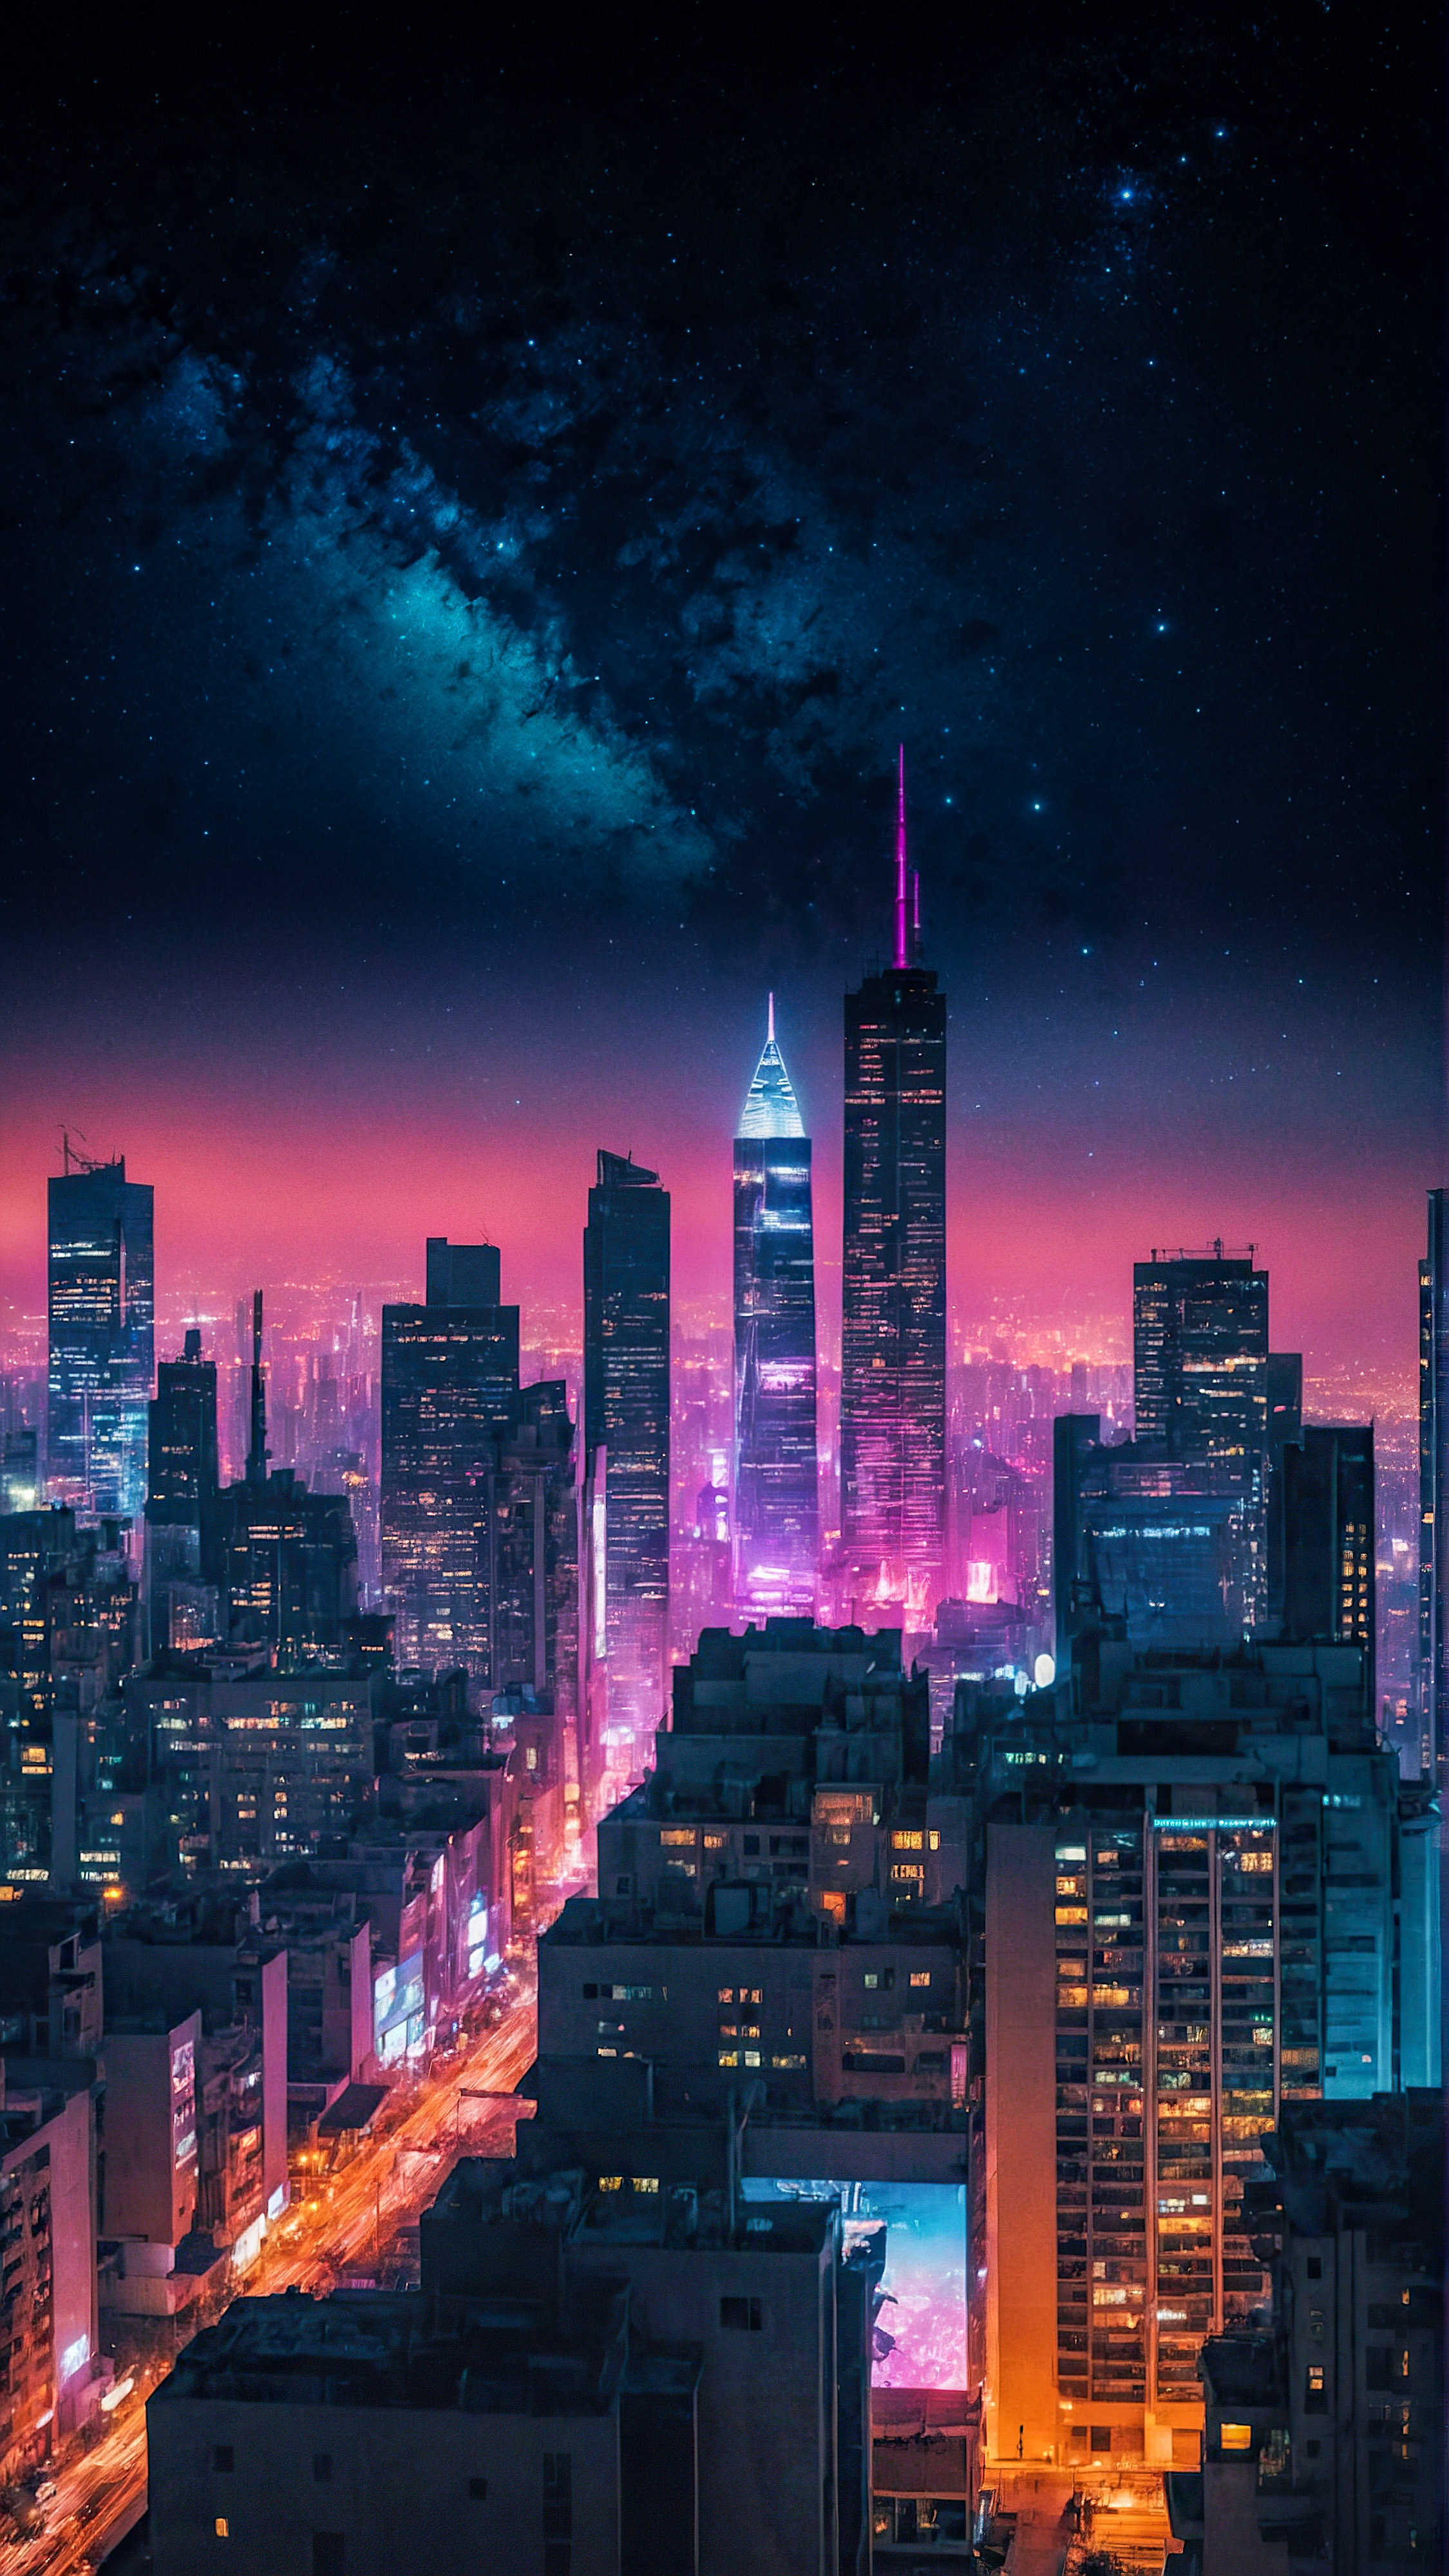 Transformez l'apparence de votre appareil avec nos beaux fonds d'écran pour l'écran d'accueil de l'iPhone, présentant un paysage urbain futuriste illuminé par des lumières néon sous un ciel étoilé.